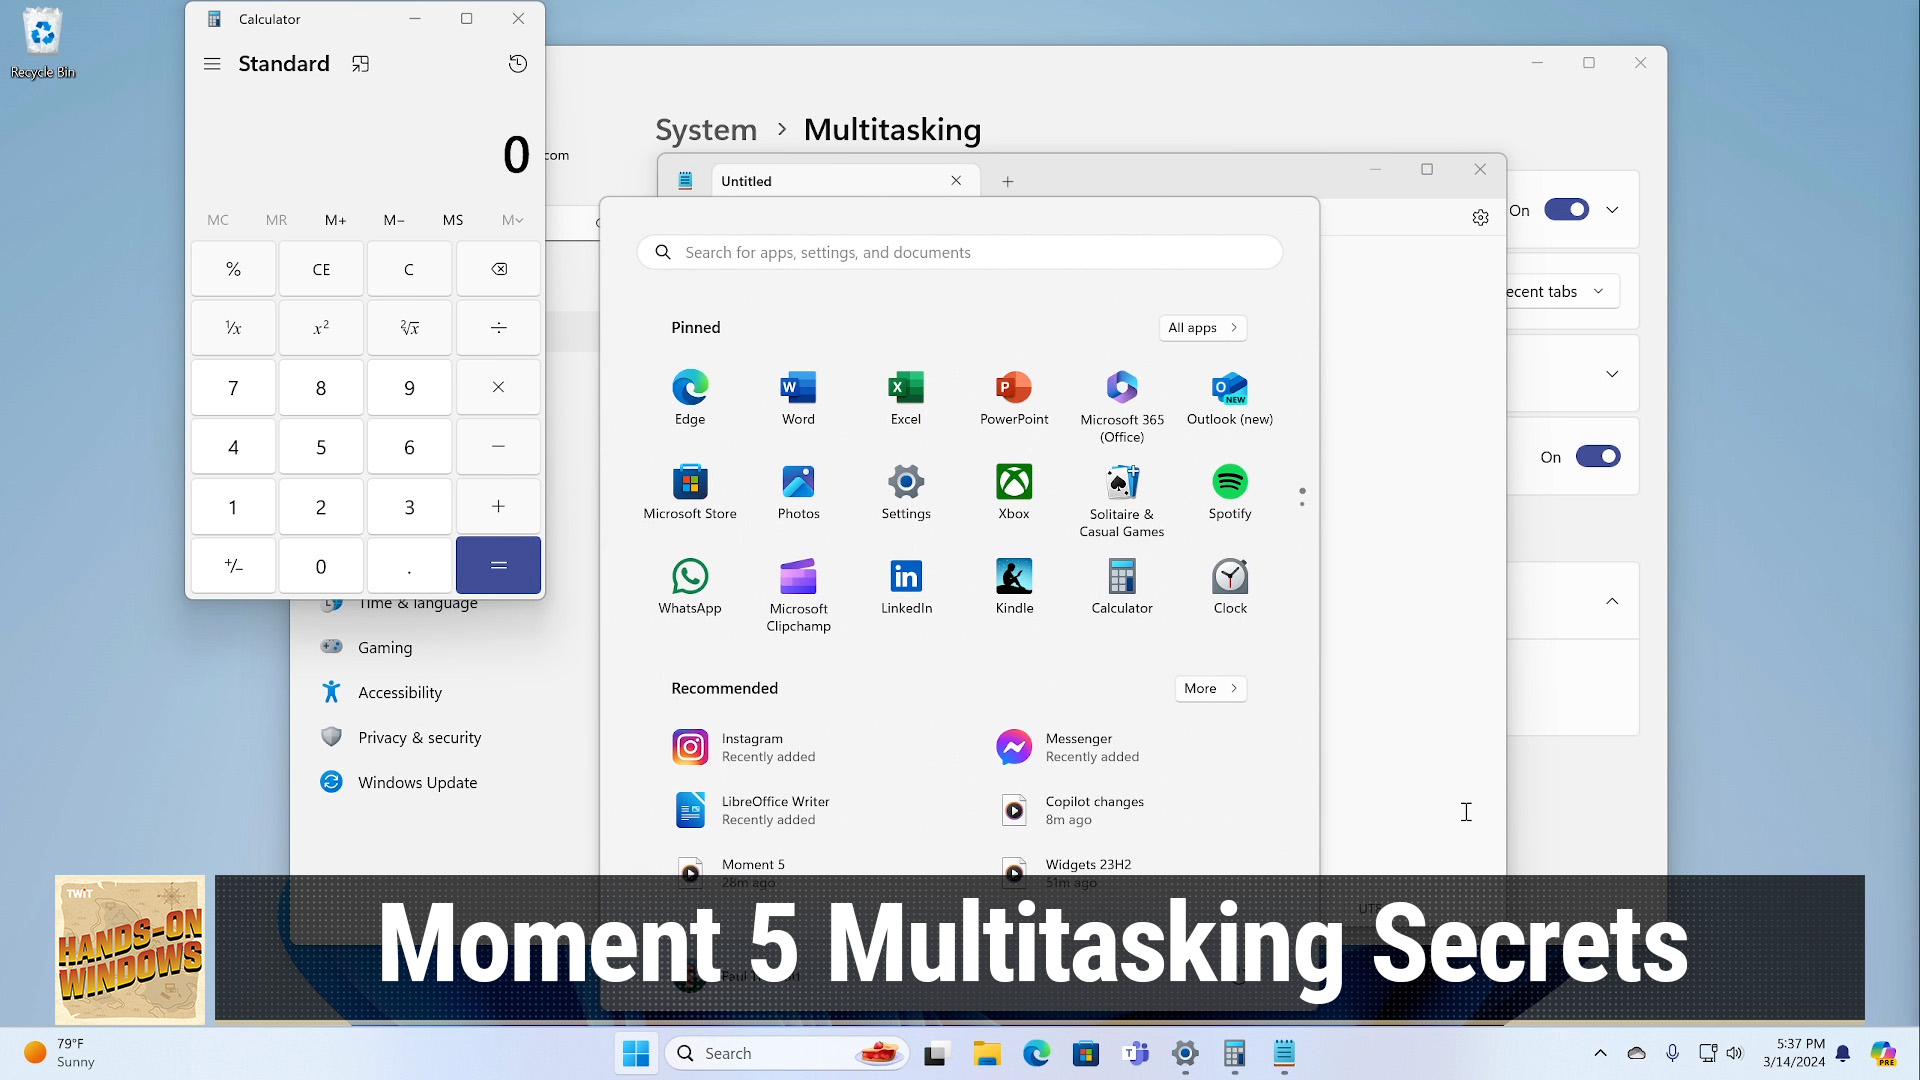 Moment 5 Multitasking Secrets (Hands-On Windows #86)